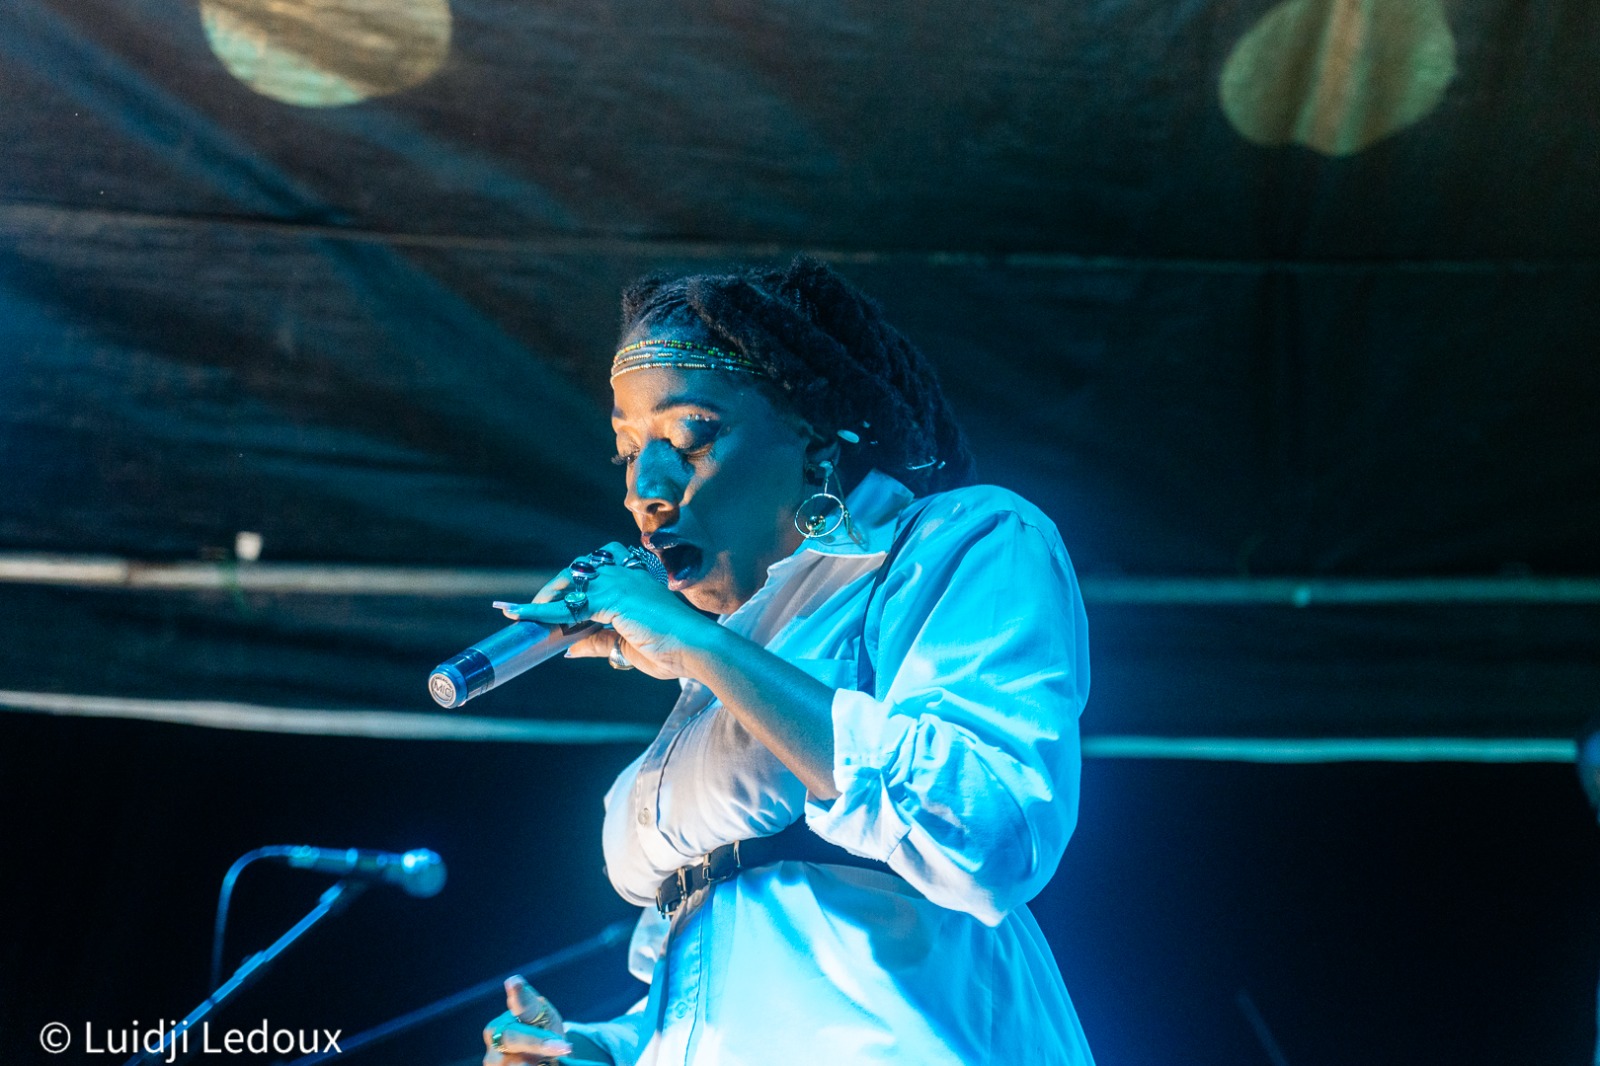     La Martinique représentée au Douala Music Art Festival au Cameroun

